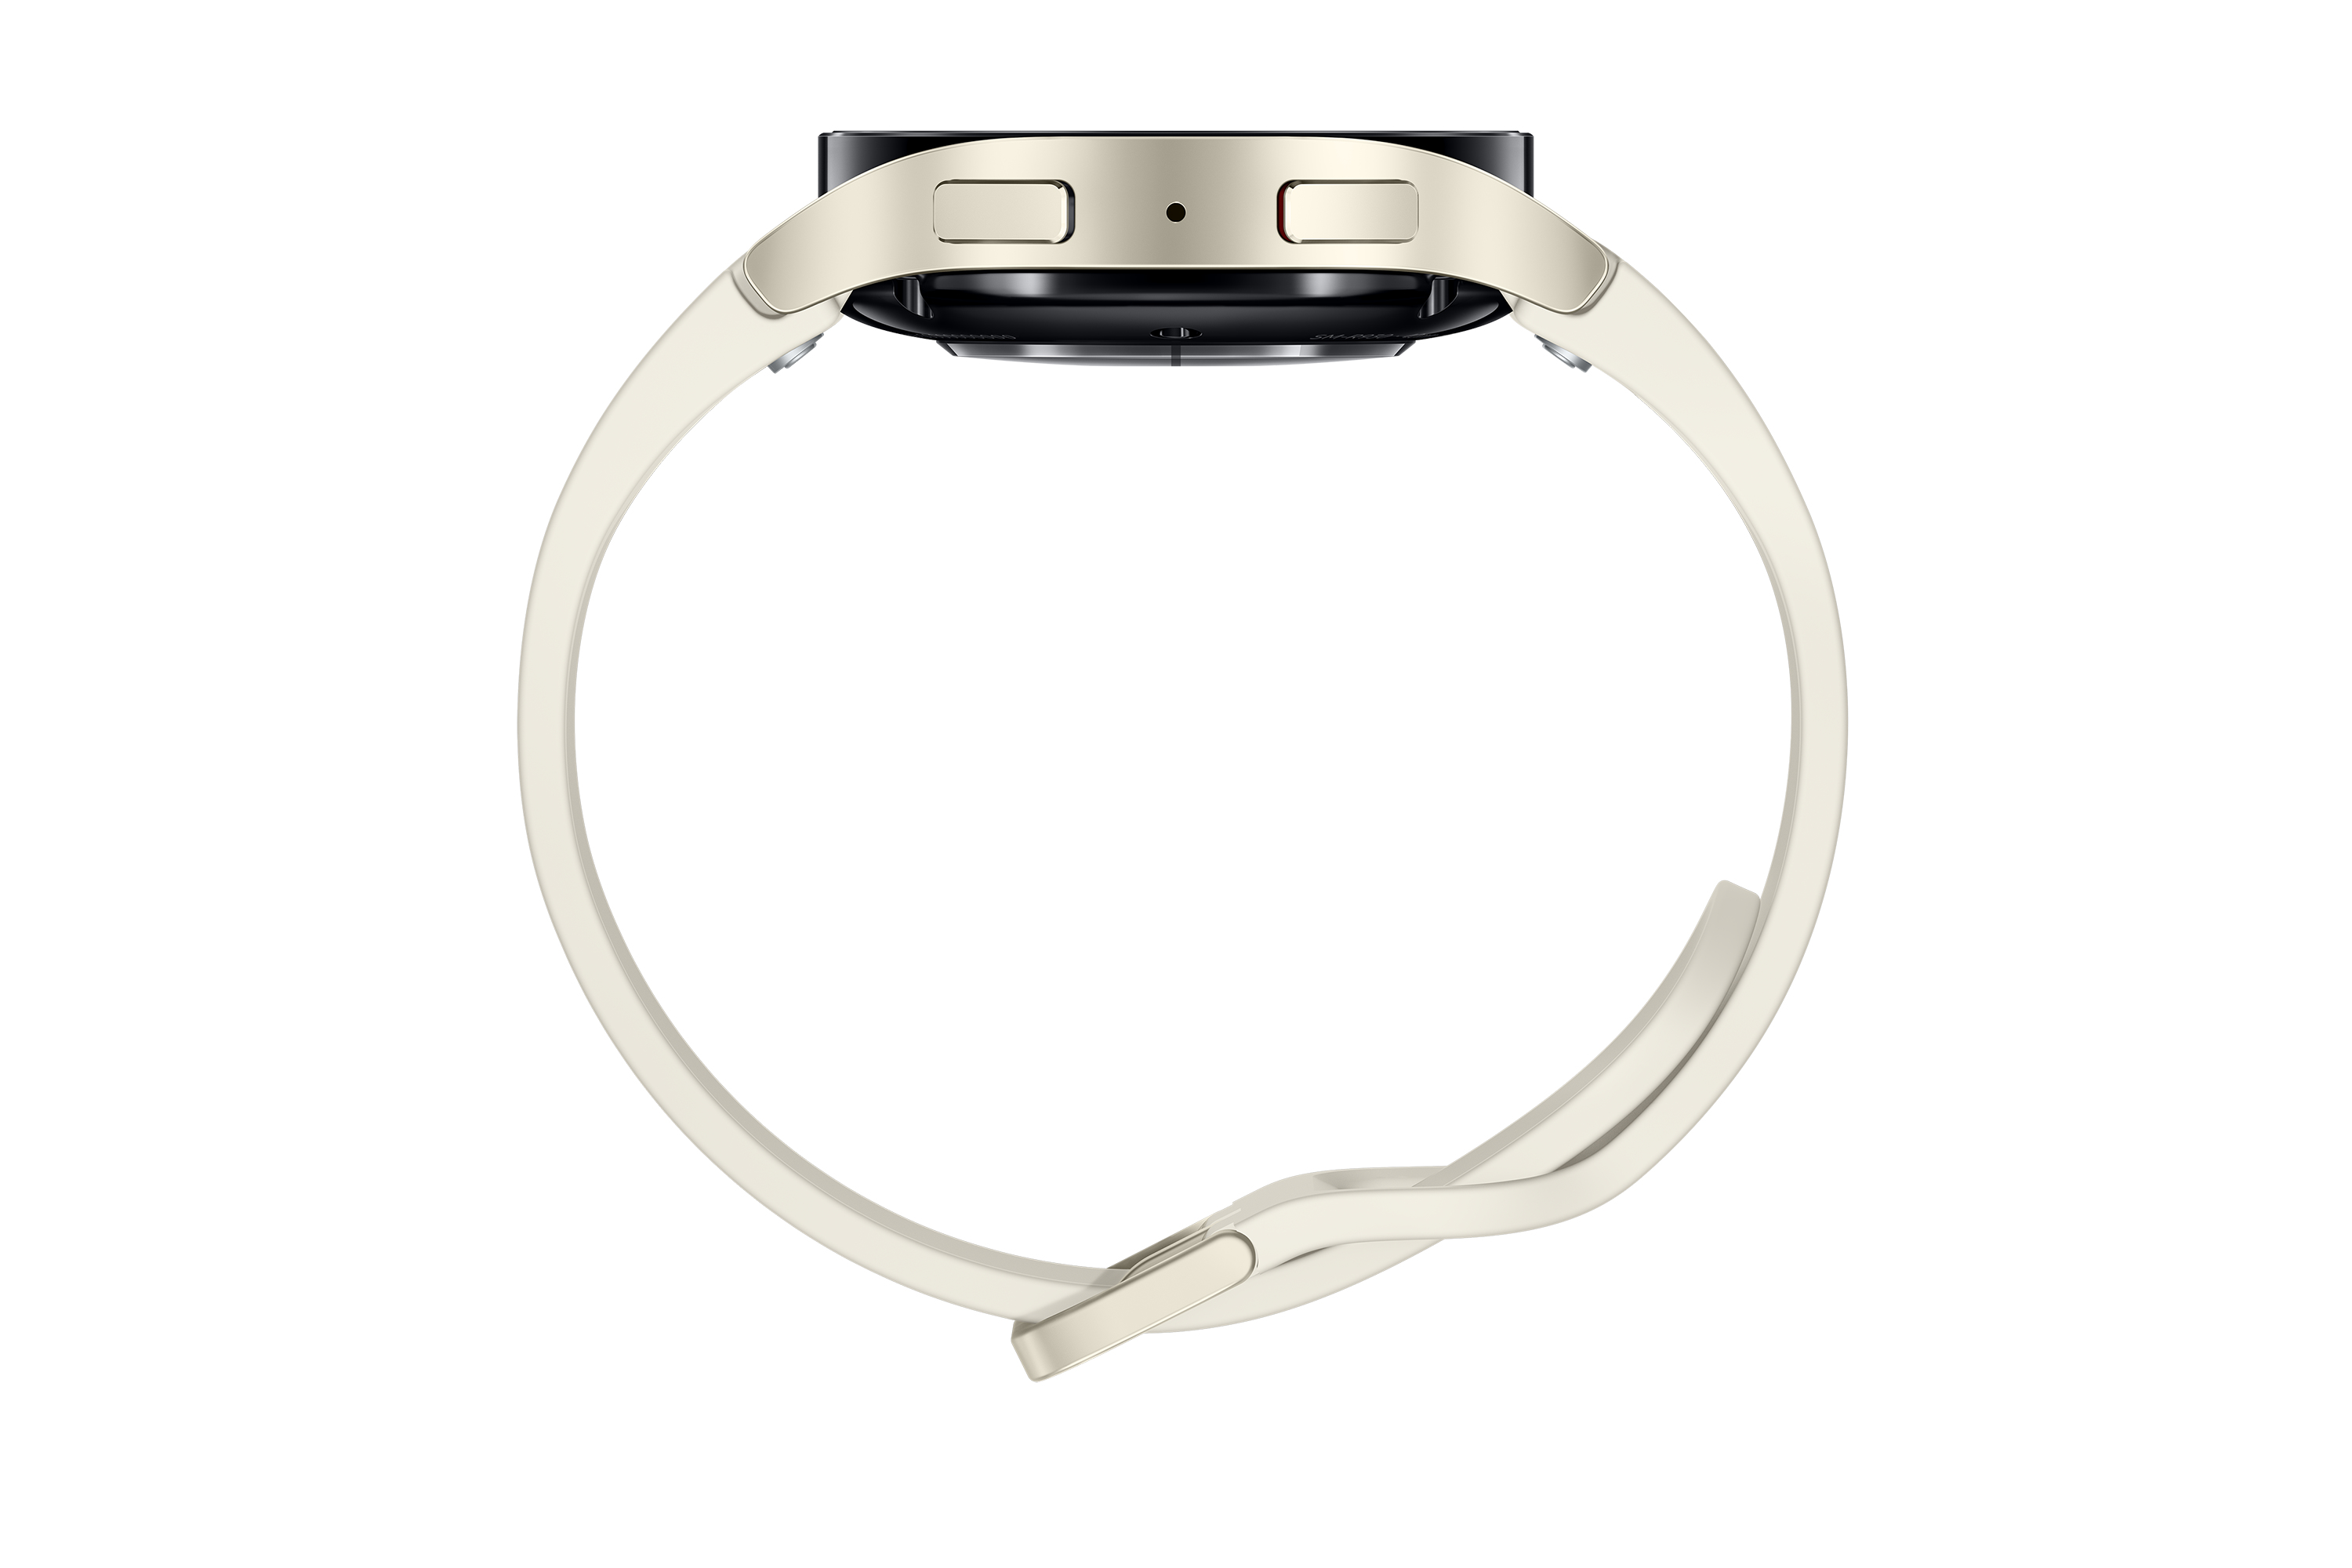 Samsung - Smartwatch Samsung Galaxy Watch 6 40mm BT Cream